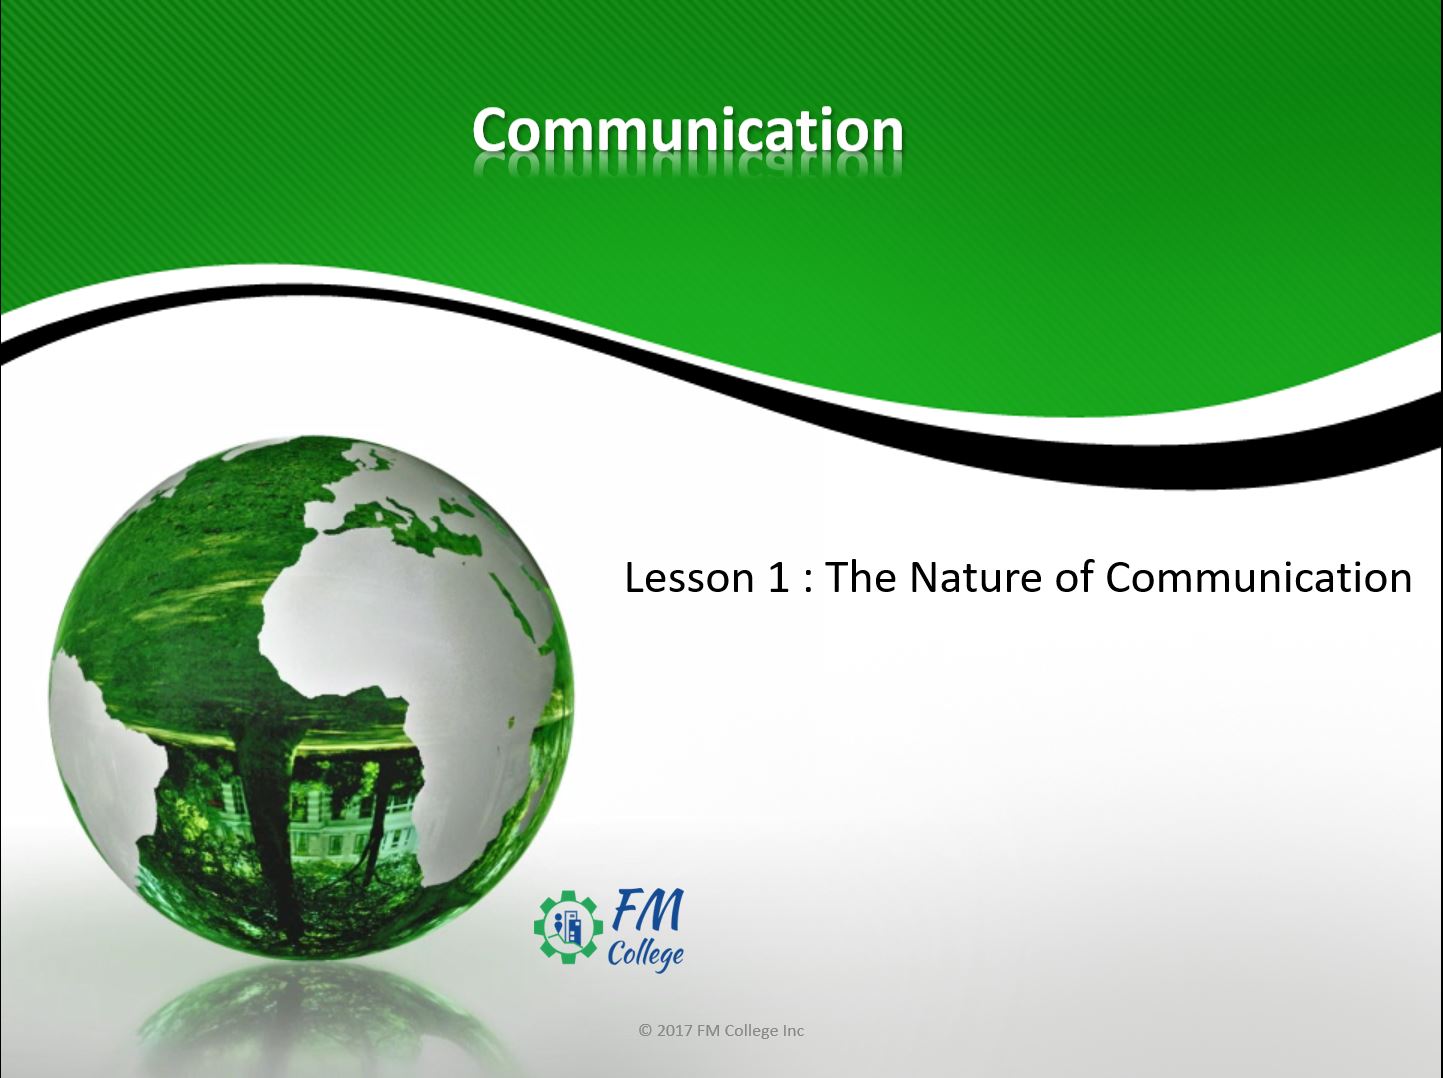 Communication lesson 1